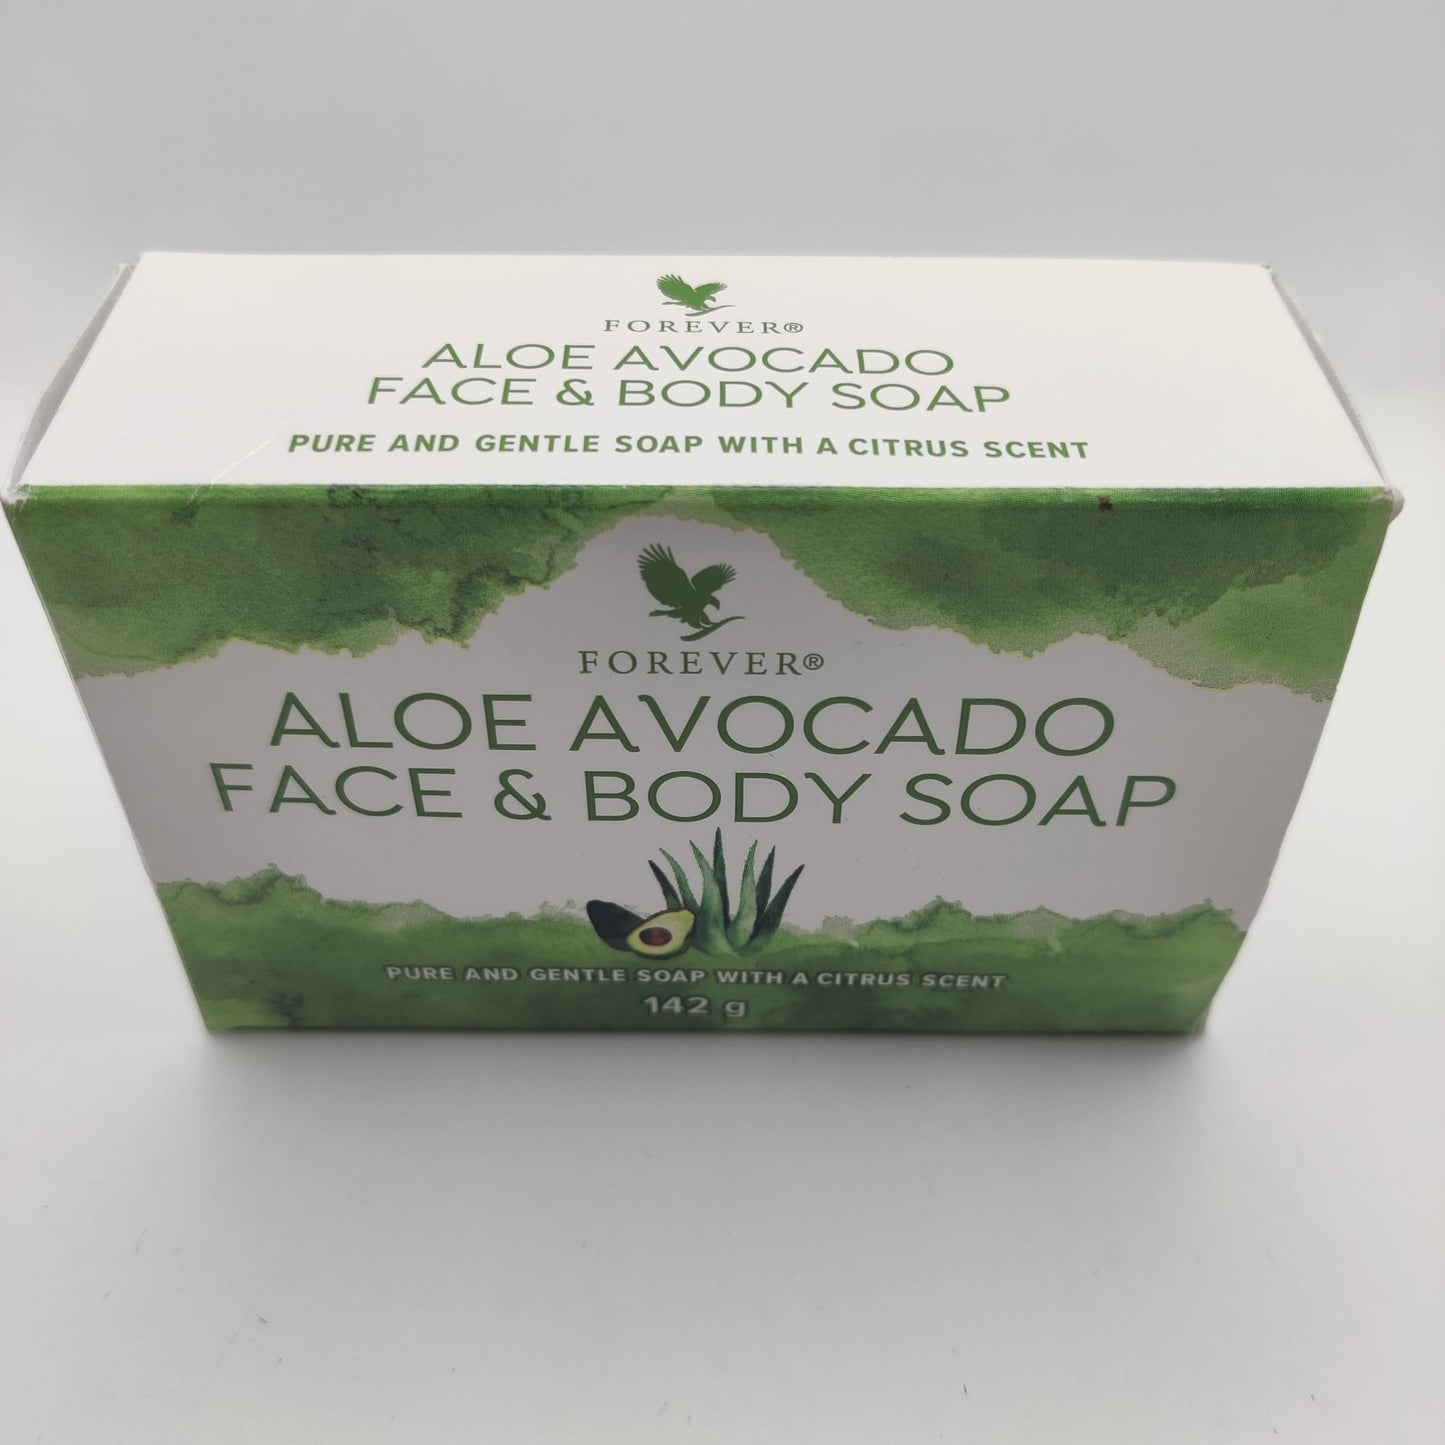 Forever - Lot de 3 Aloe Avocado Face & Body Soap - 3x 142g